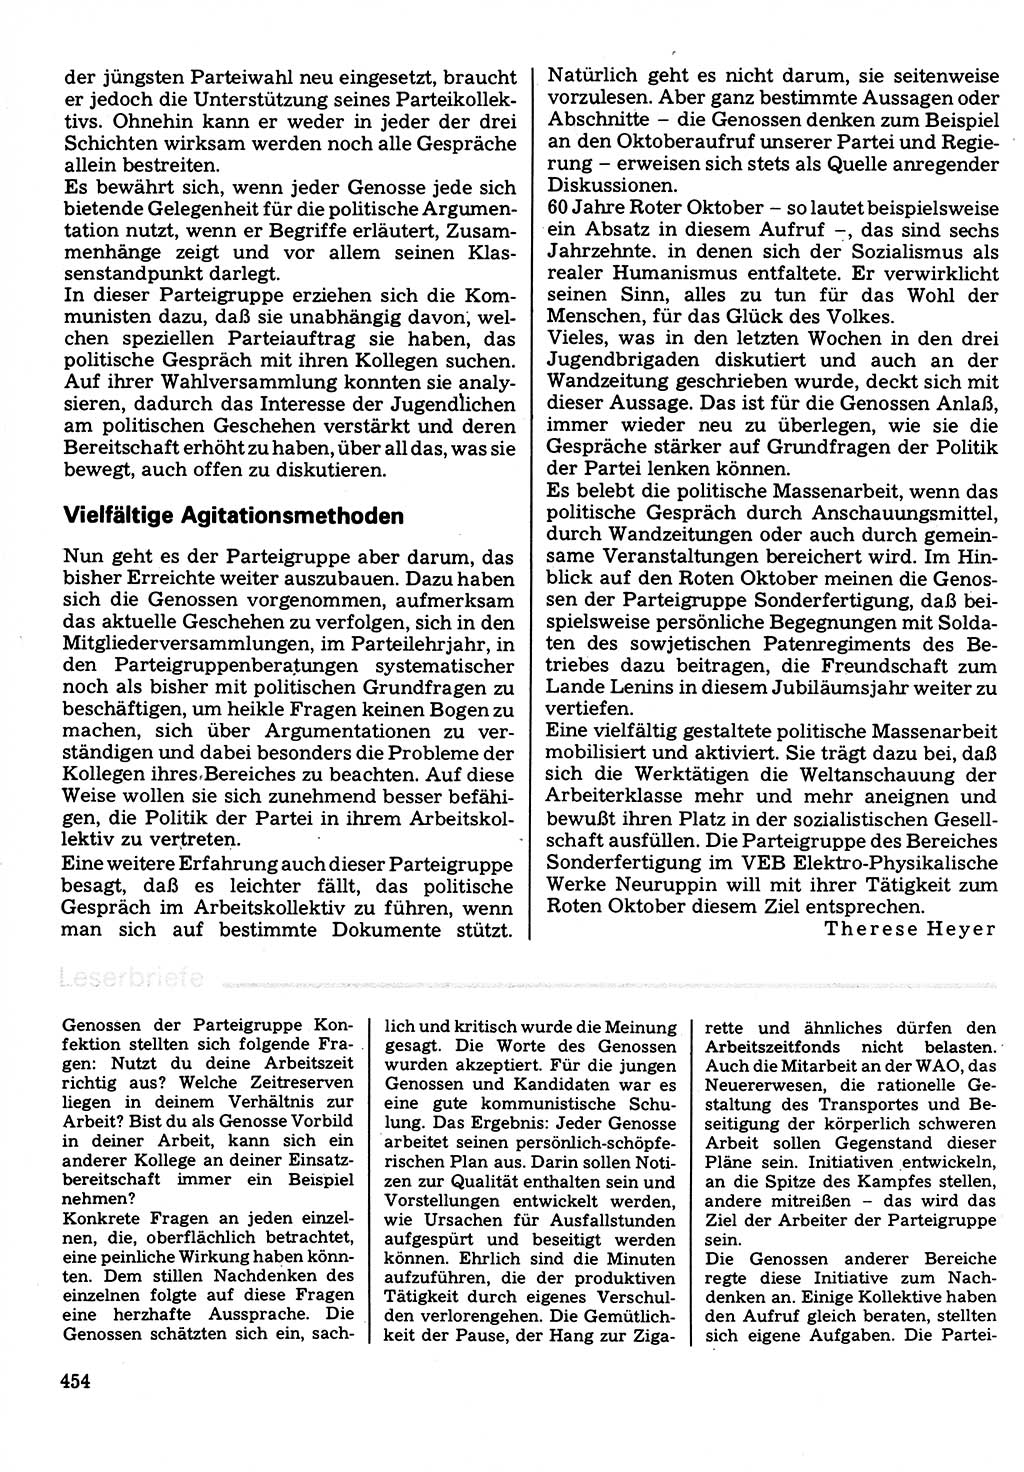 Neuer Weg (NW), Organ des Zentralkomitees (ZK) der SED (Sozialistische Einheitspartei Deutschlands) für Fragen des Parteilebens, 32. Jahrgang [Deutsche Demokratische Republik (DDR)] 1977, Seite 454 (NW ZK SED DDR 1977, S. 454)